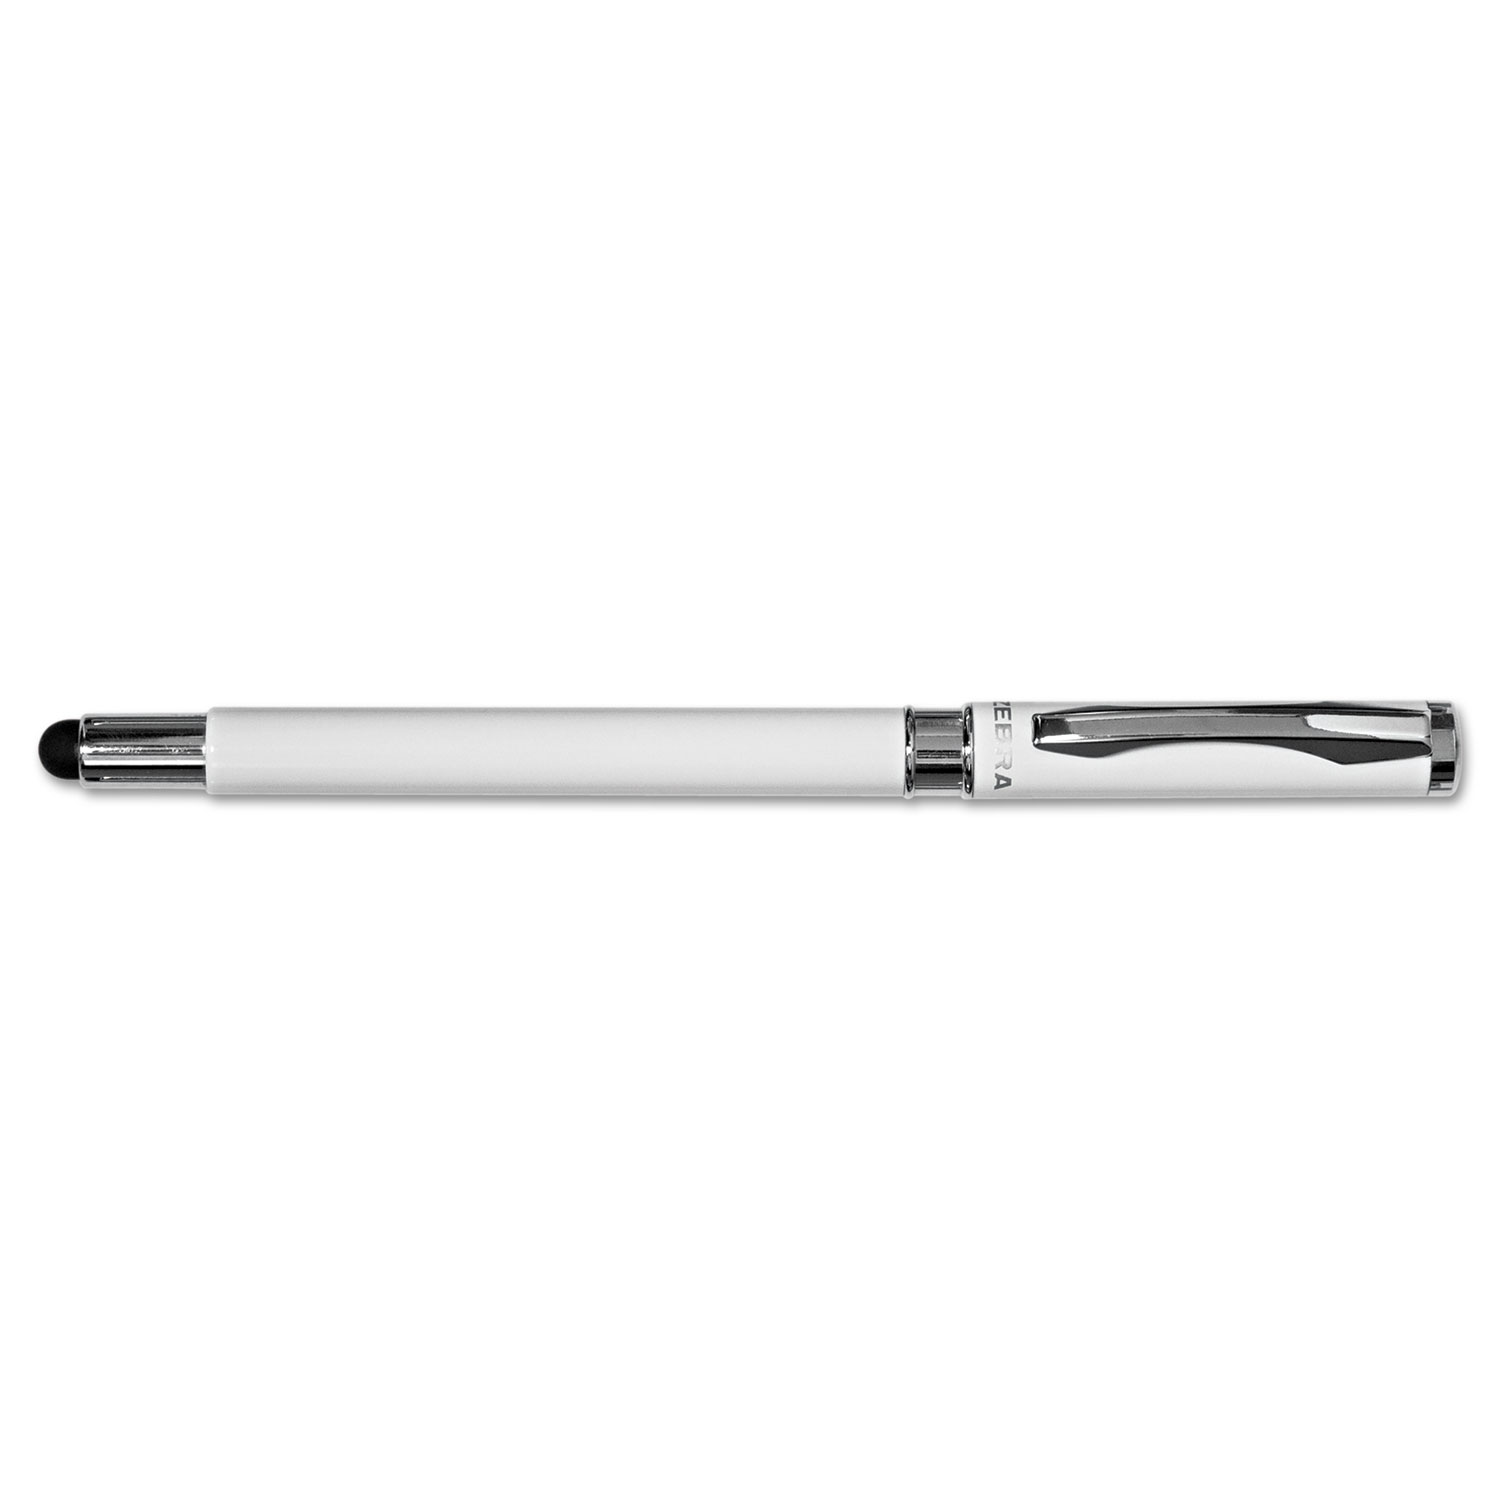 StylusPen Capped Ballpoint Pen/Stylus, White